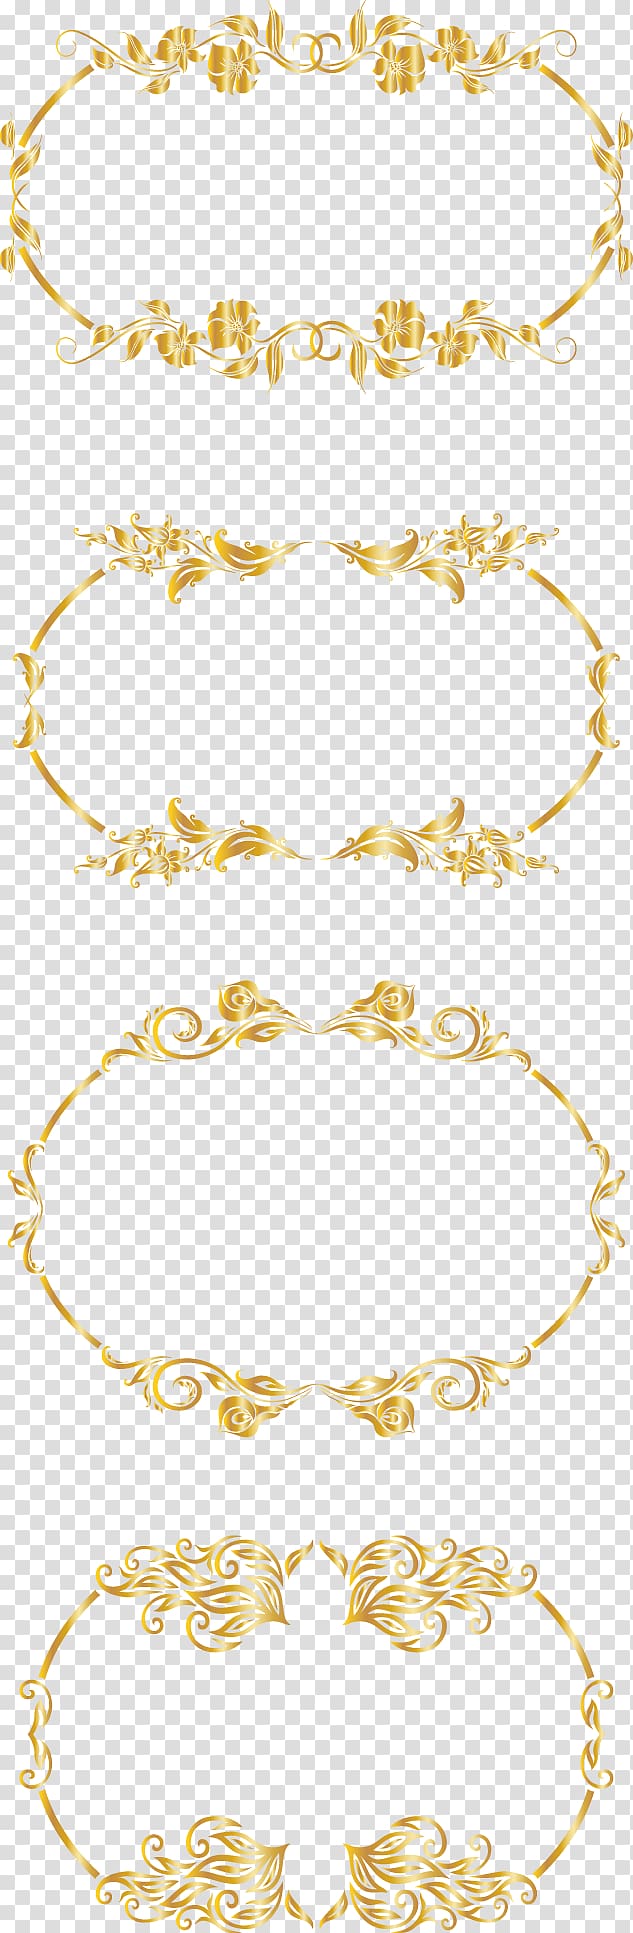 brown floral border illustration, Ellipse Area Pattern, Gold pattern frame transparent background PNG clipart